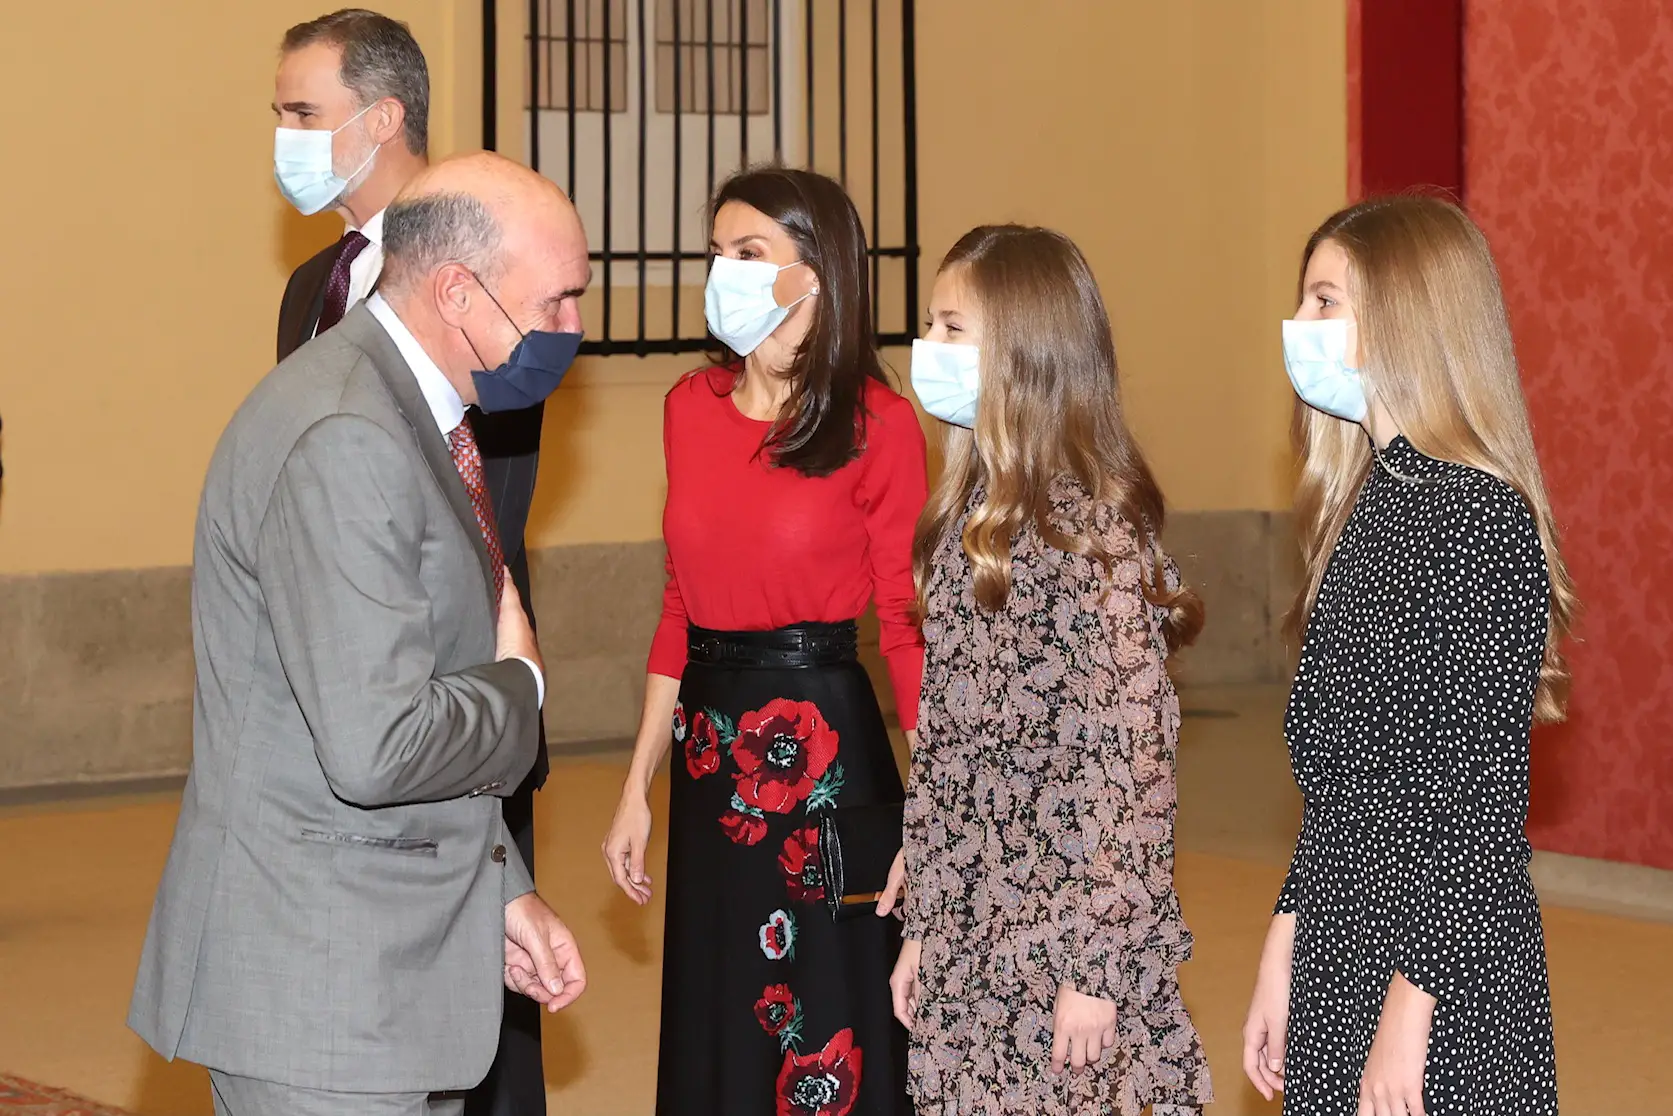 Spain Royal Family attended Princess of Girona Foundation Meeting at the Royal Palac of El Pardo